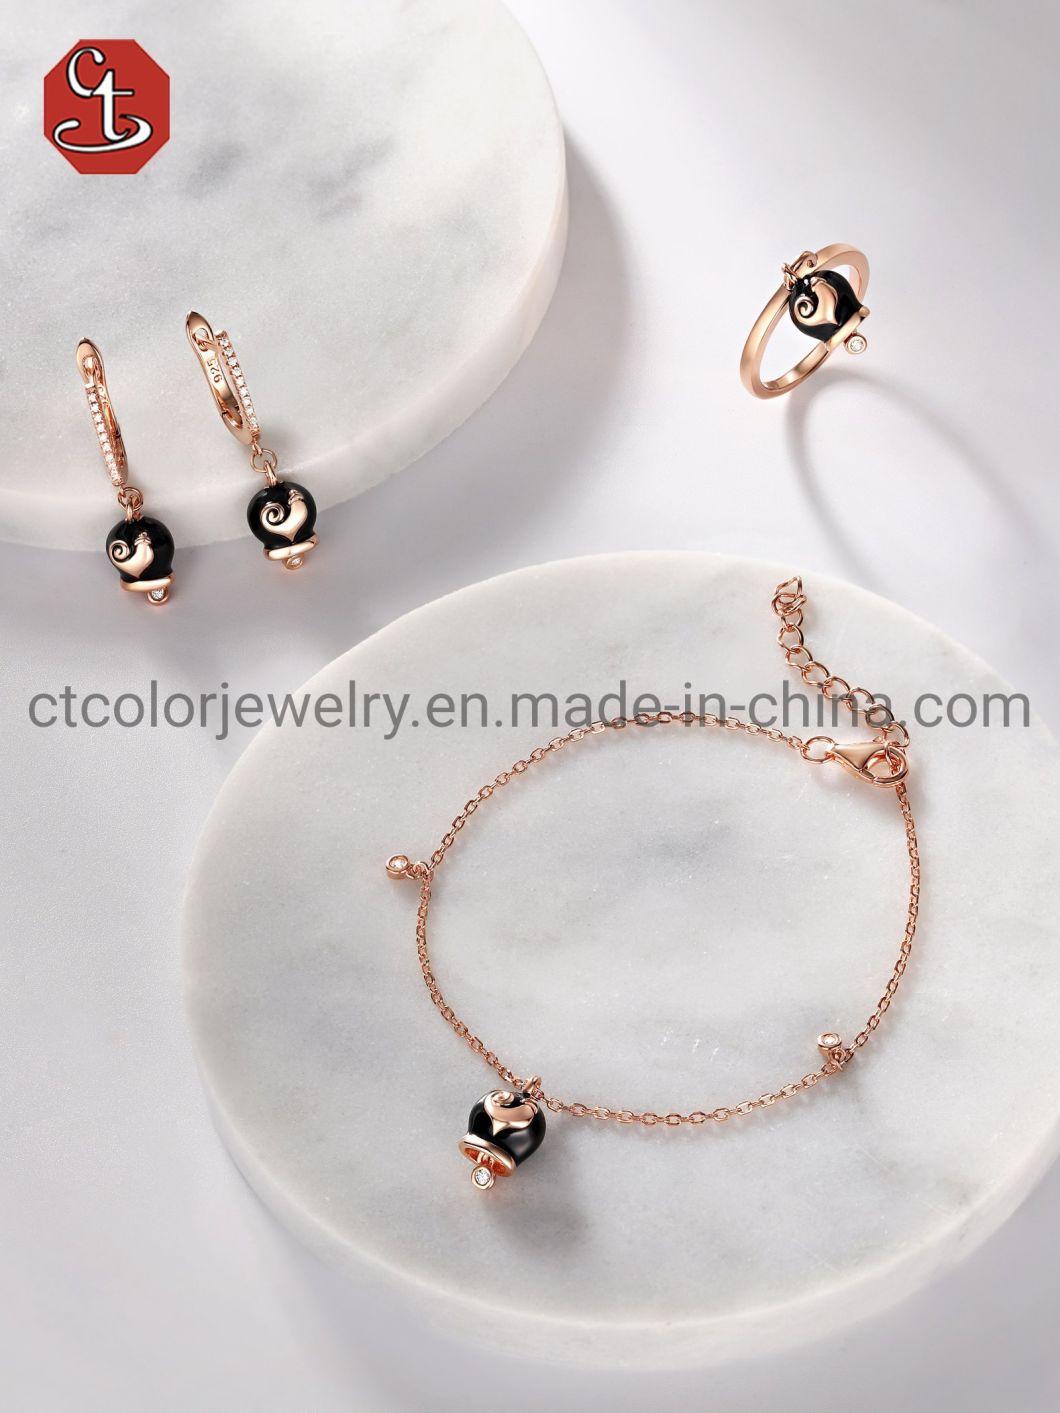 Fashion 925 Silver Simple Custom Enamel Charm Earrings Jewelry